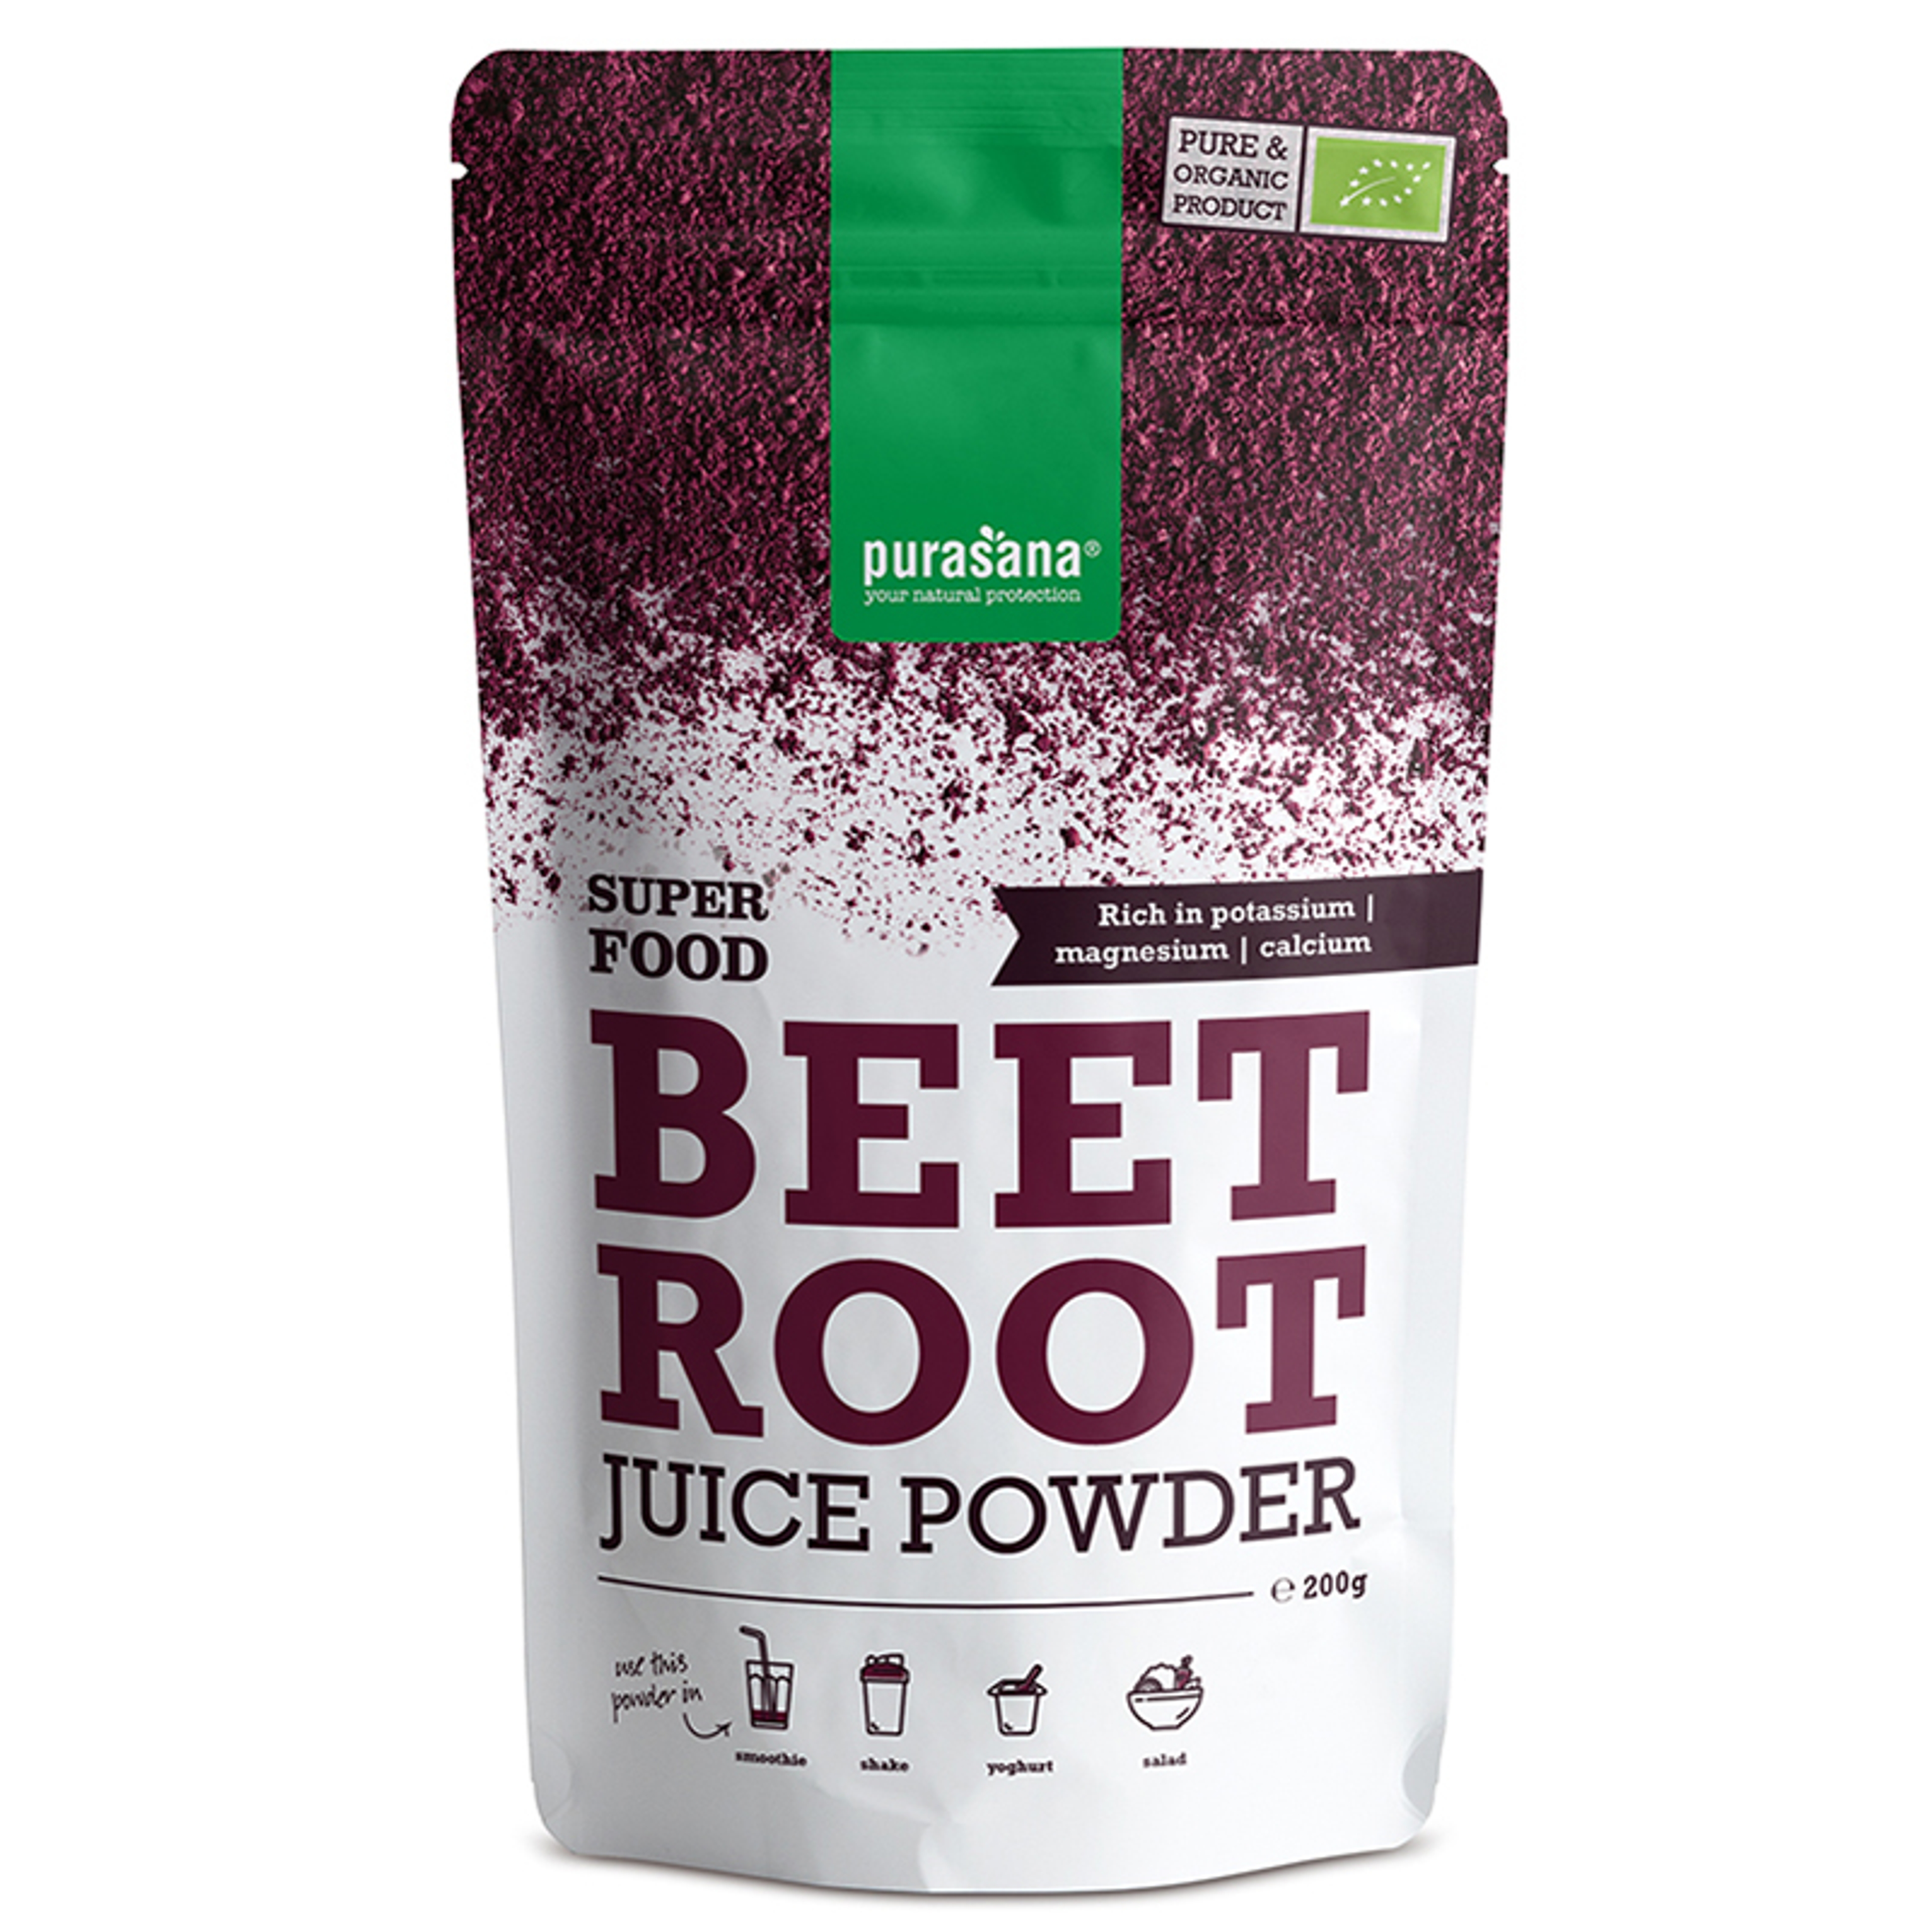 Beetroot Powder Organic - 200 g Powder